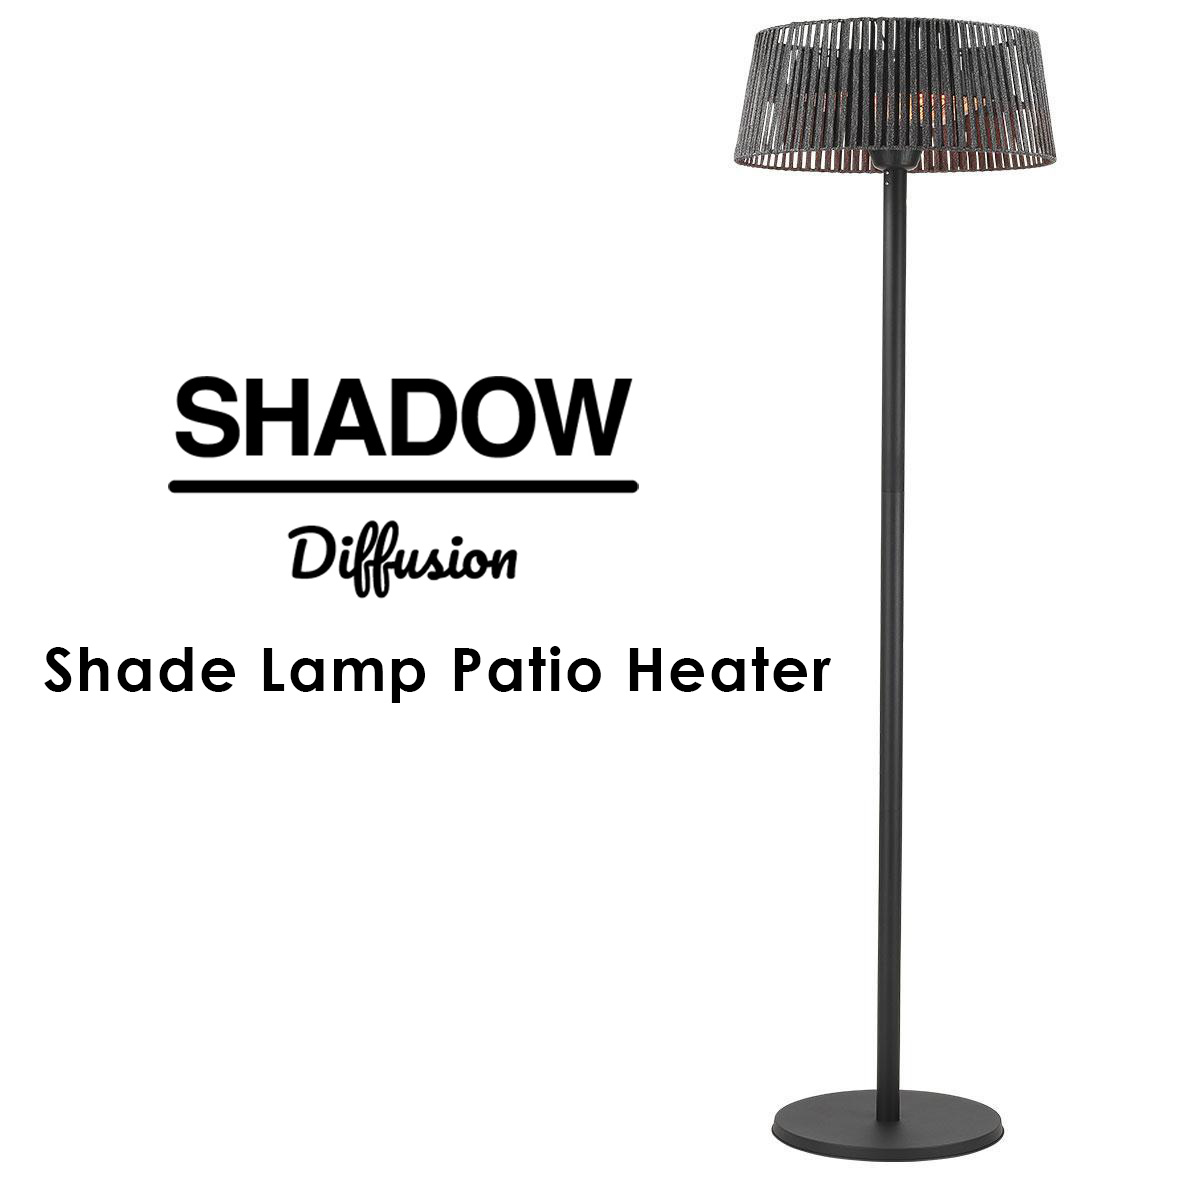 The Shadow Difusion Range - Shade lamp